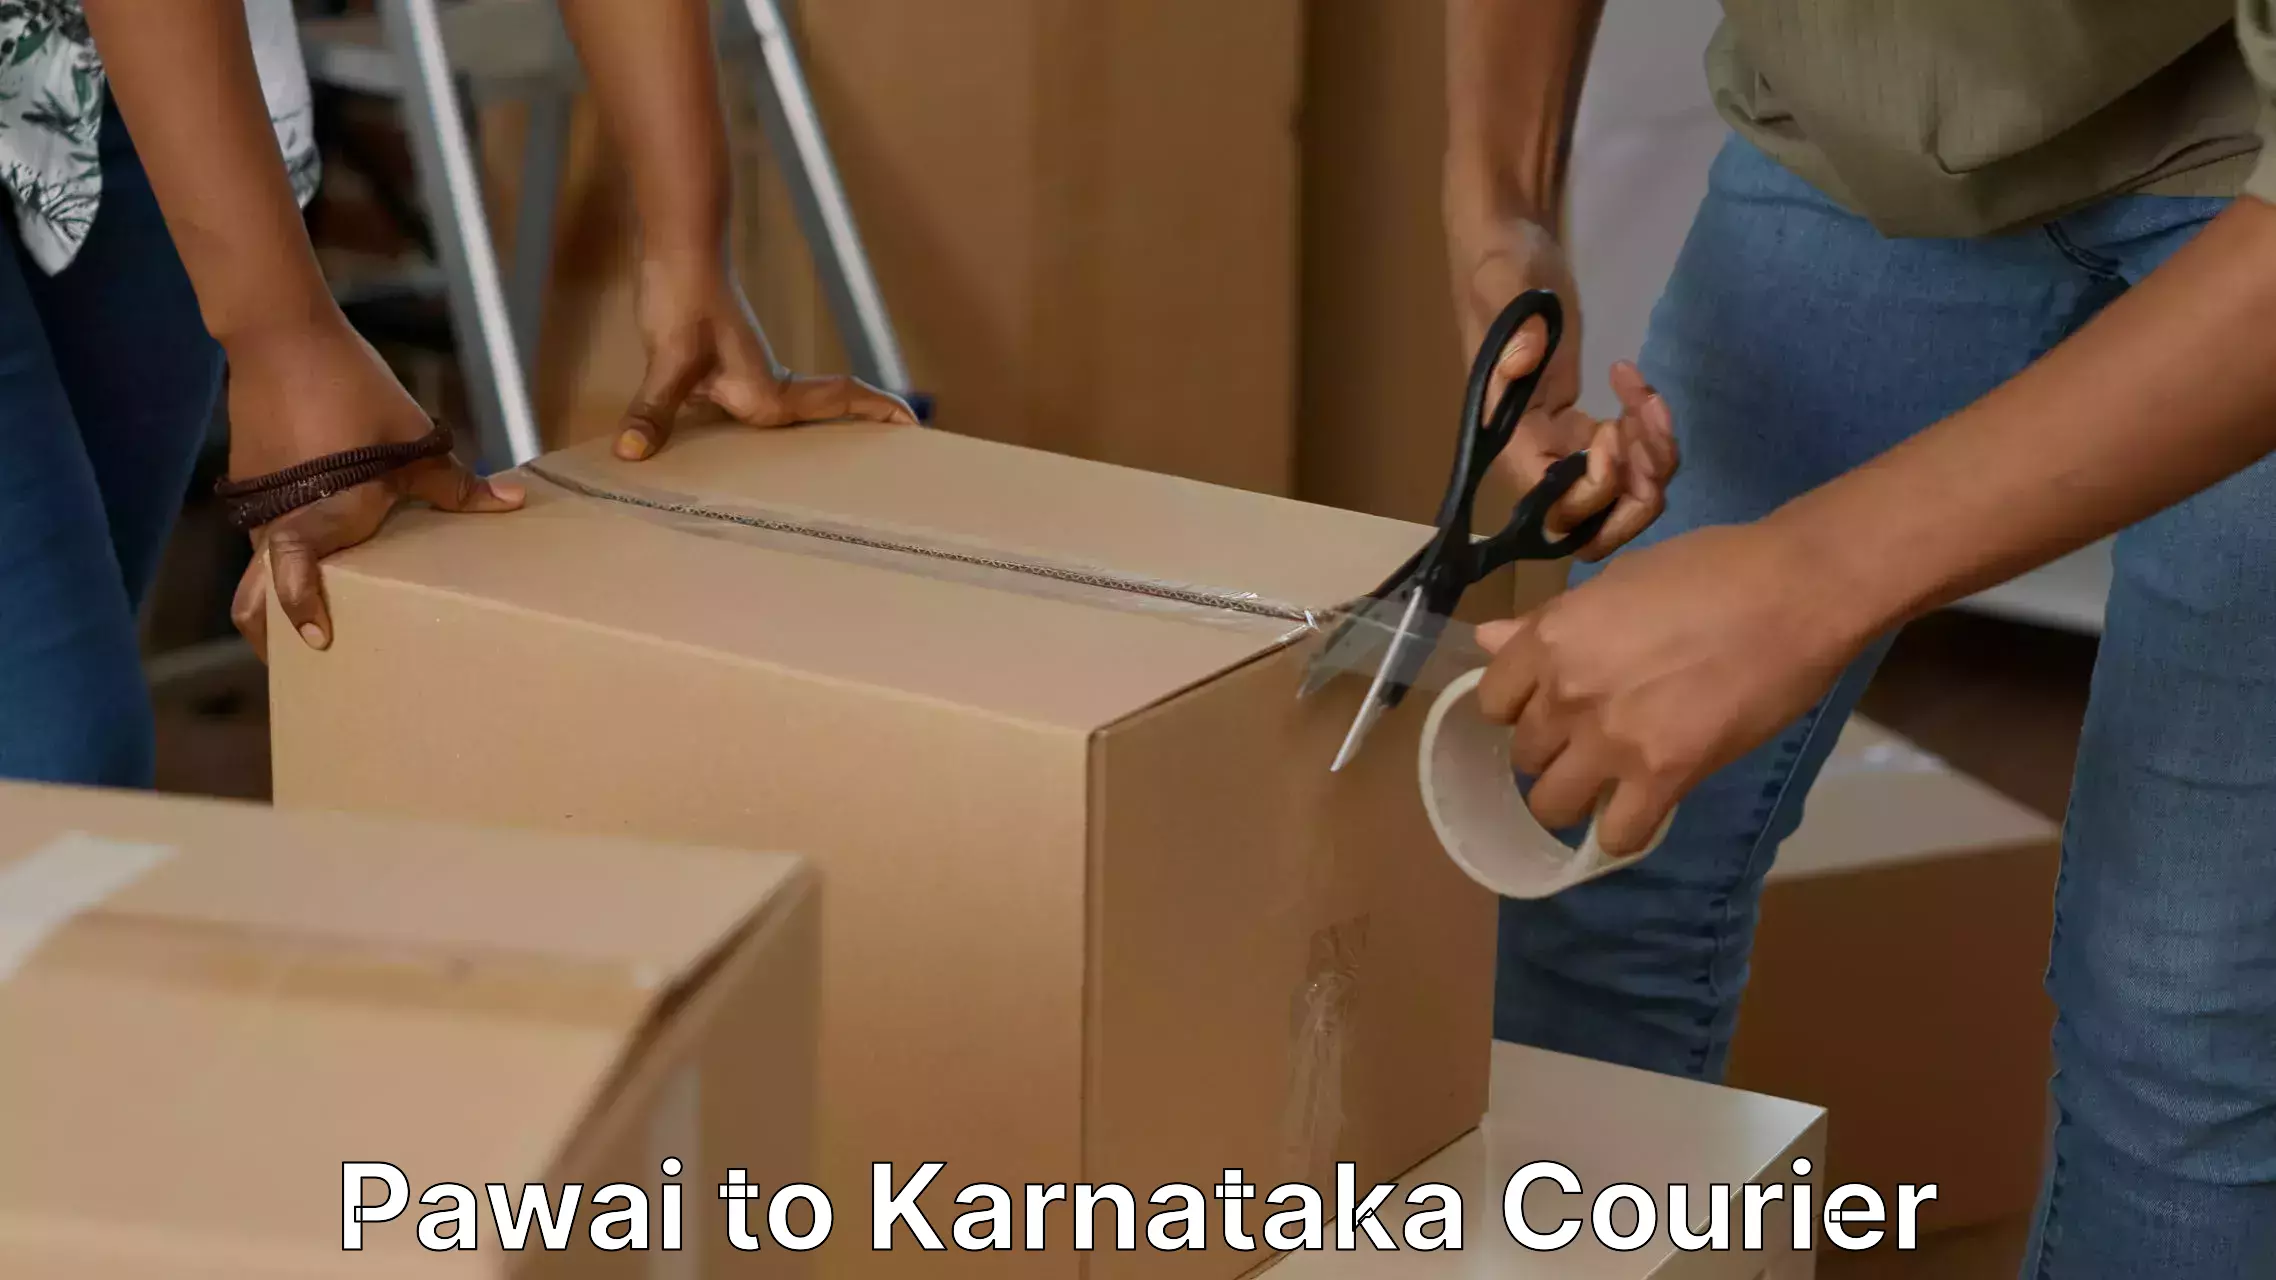 Professional moving assistance Pawai to Karnataka